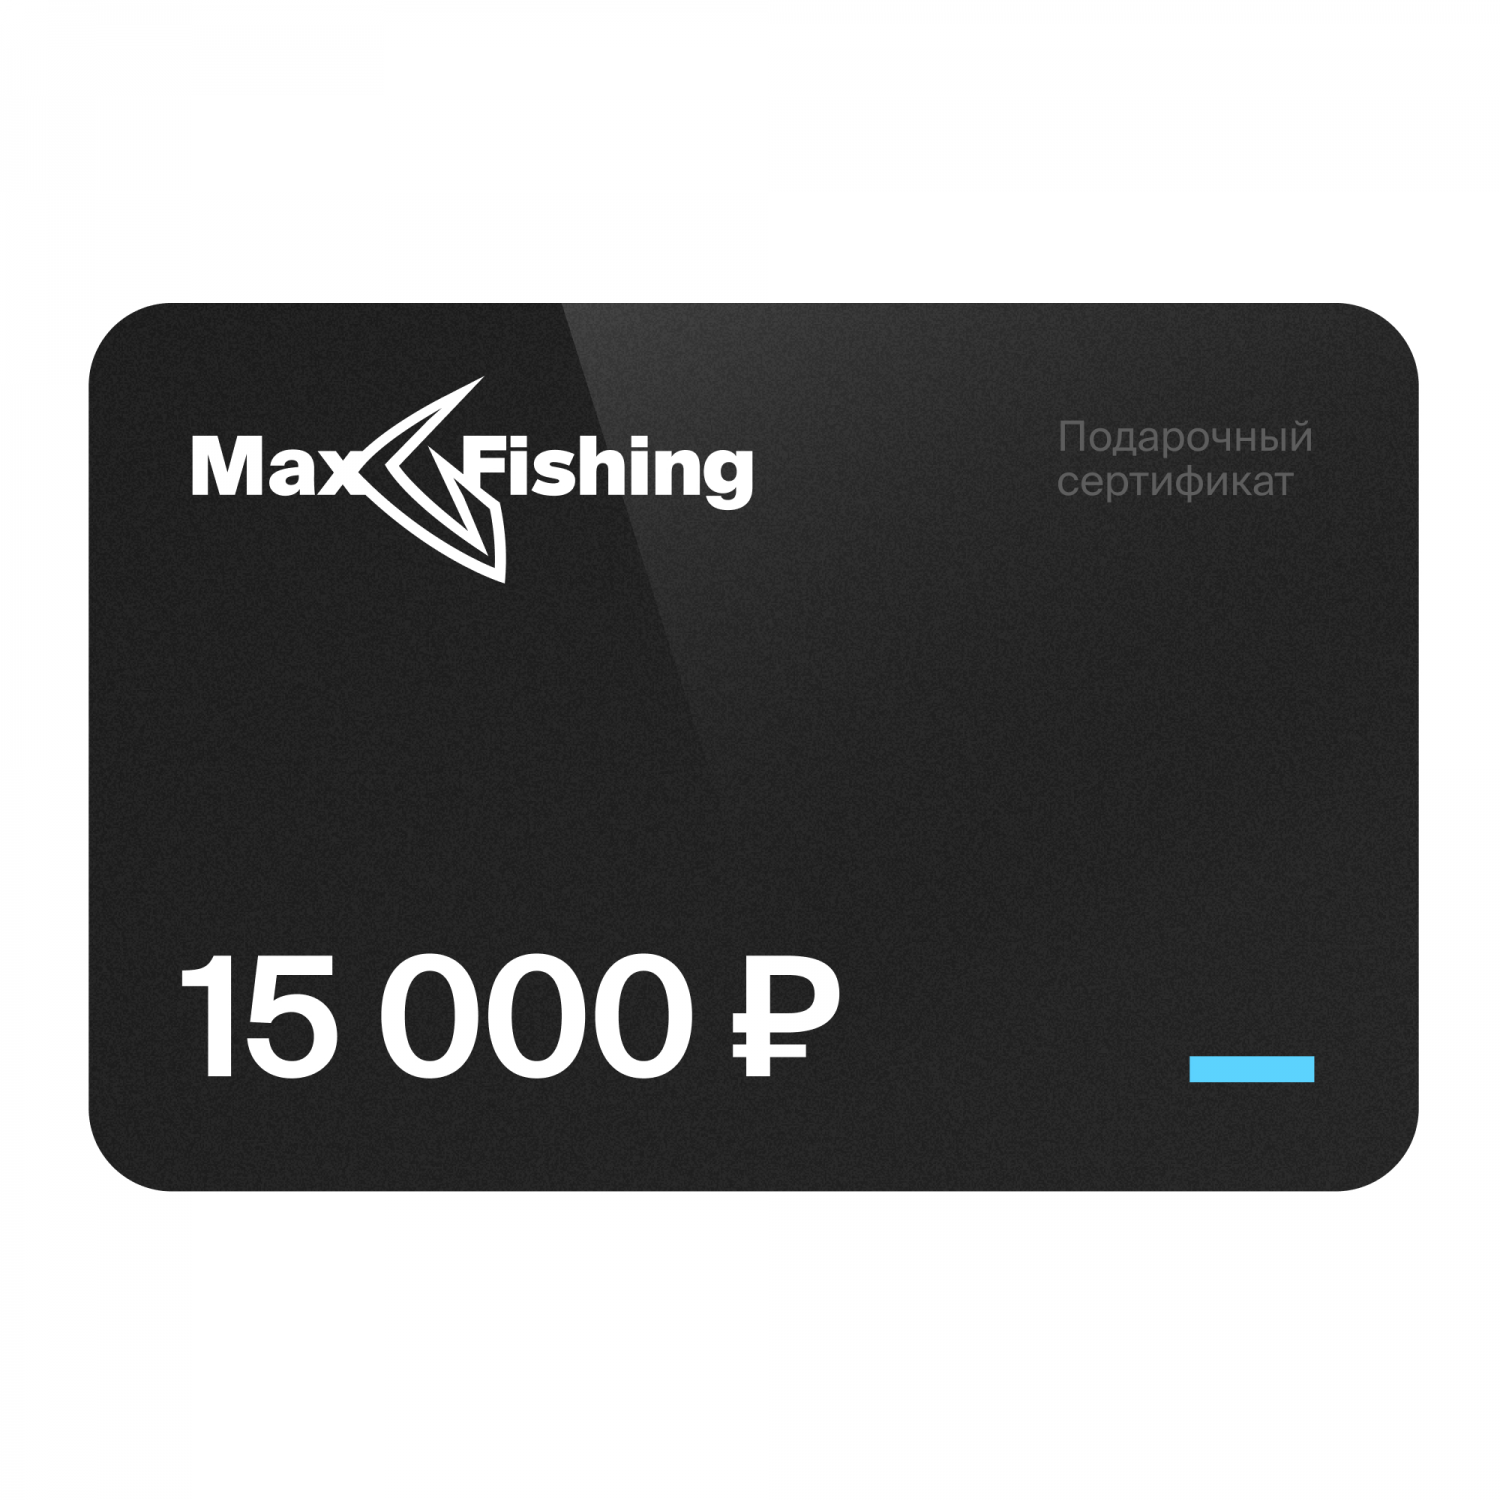 Подарочный сертификат MaxFishing 15 000 ₽ виртуальный подарочный сертификат 3 000